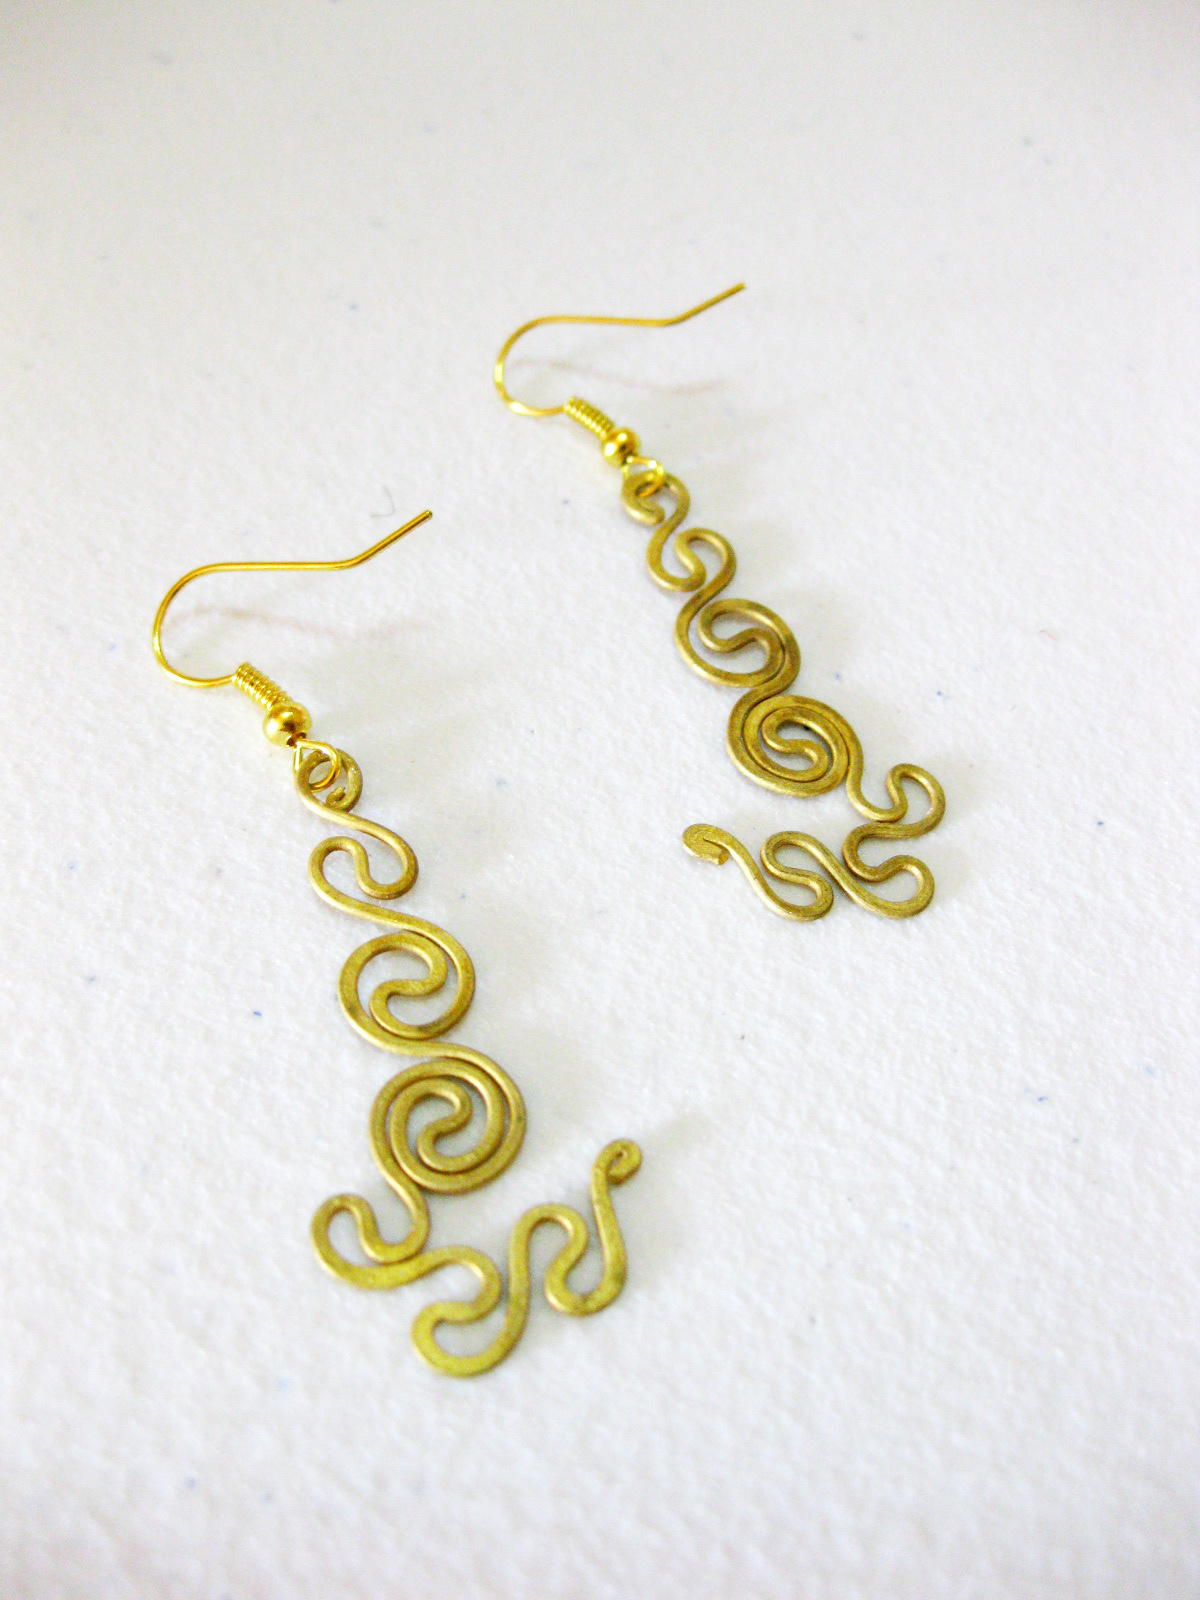 Brass Dangle Earrings, Swirl Brass Earrings, Fashion Designs, Handmade Earrings, Brass Jewelry, Thailand Handmade. (je1009)